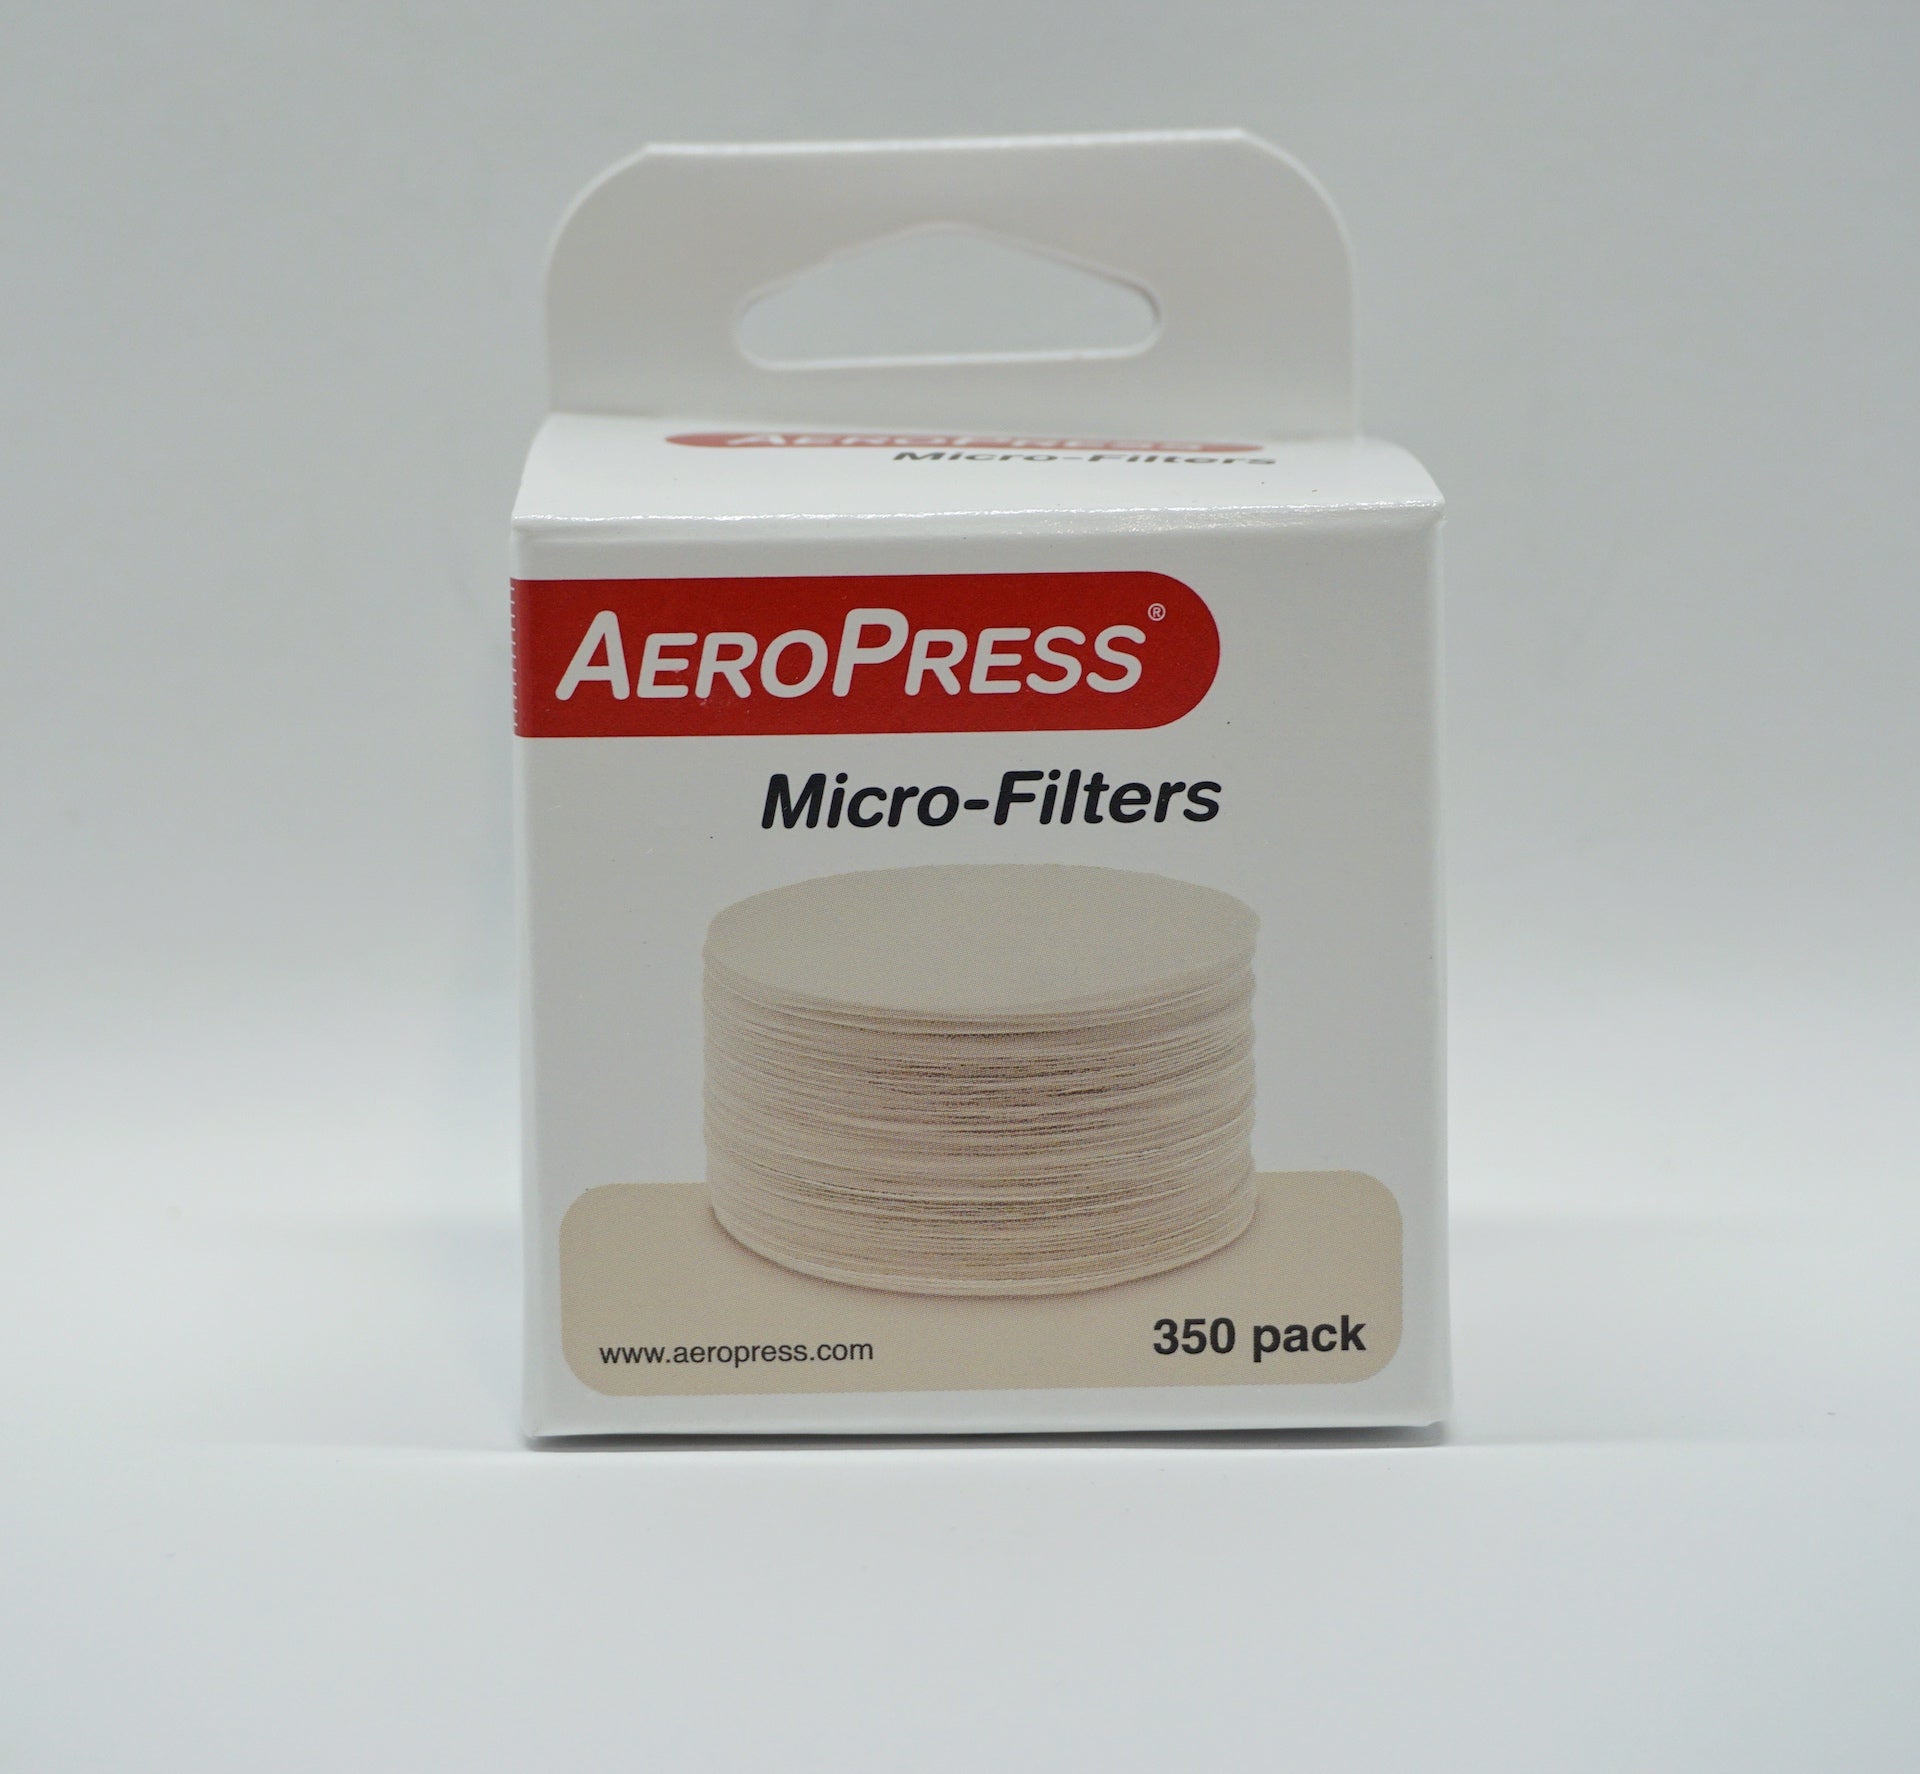 Aeropress Filterpapier 350stk - Beans Café & Rösterei 